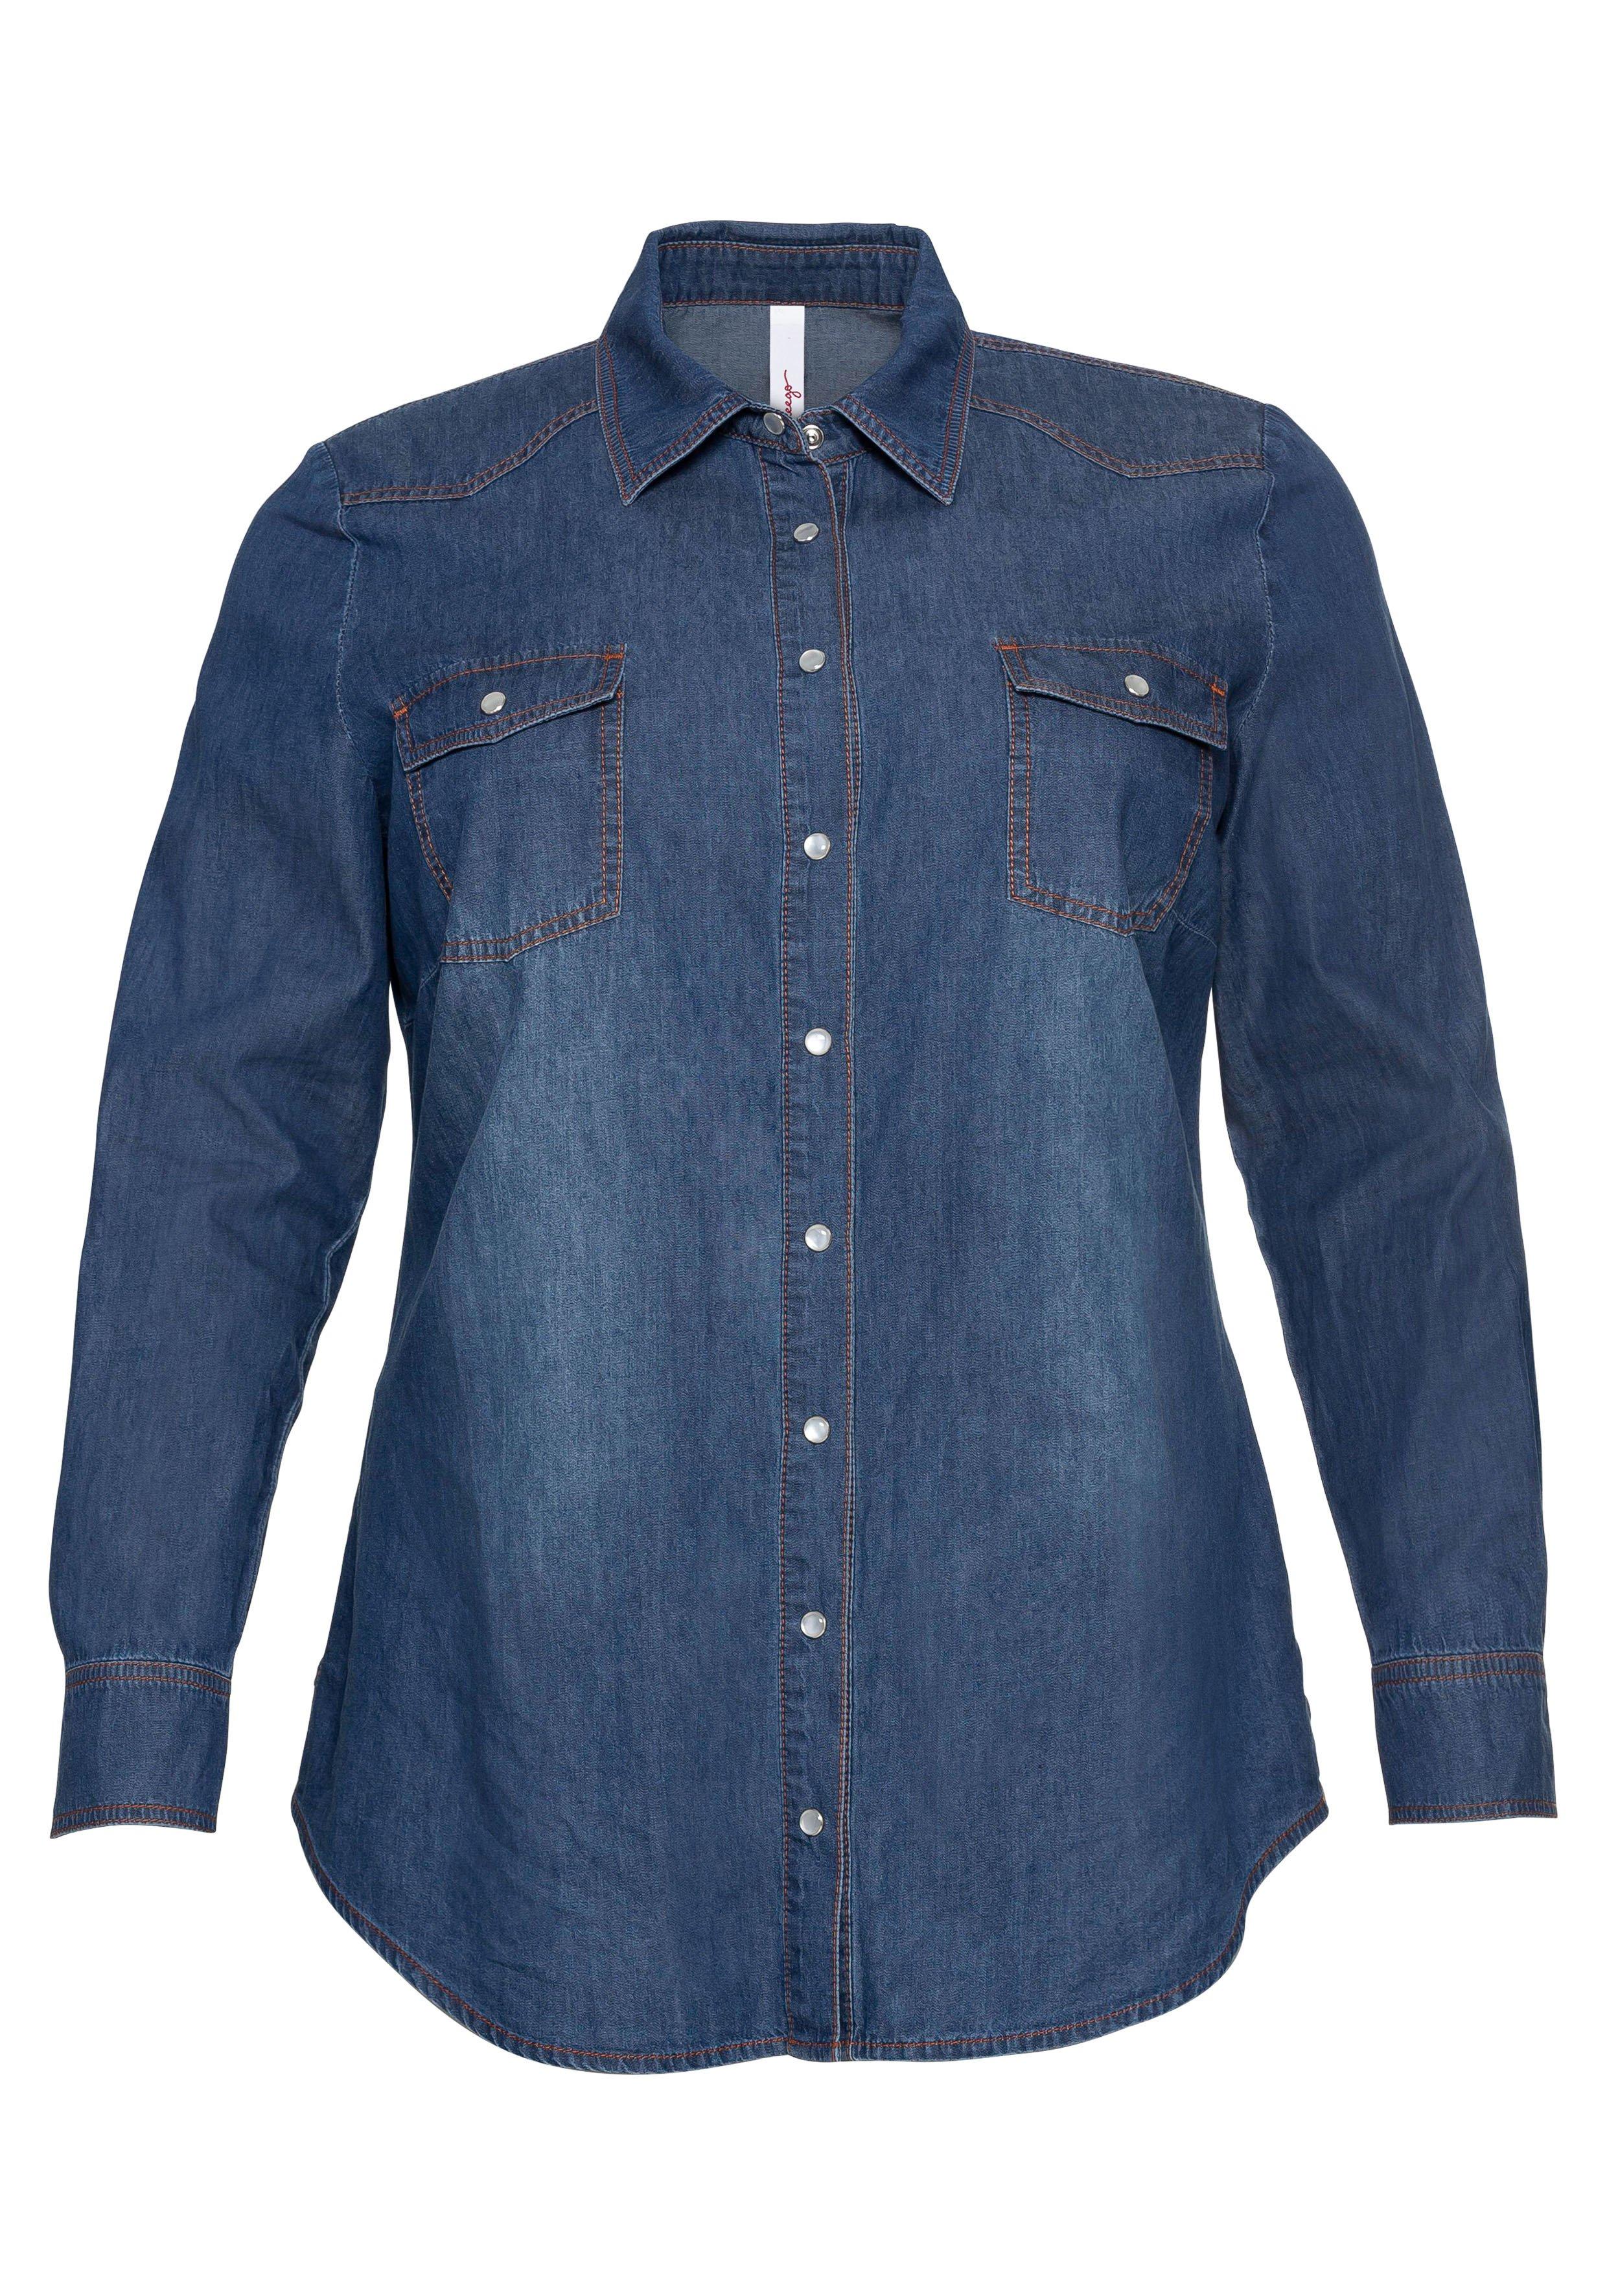 T-Shirt mit Streifen und Rundhalsausschnitt - jeansblau-weiß | sheego